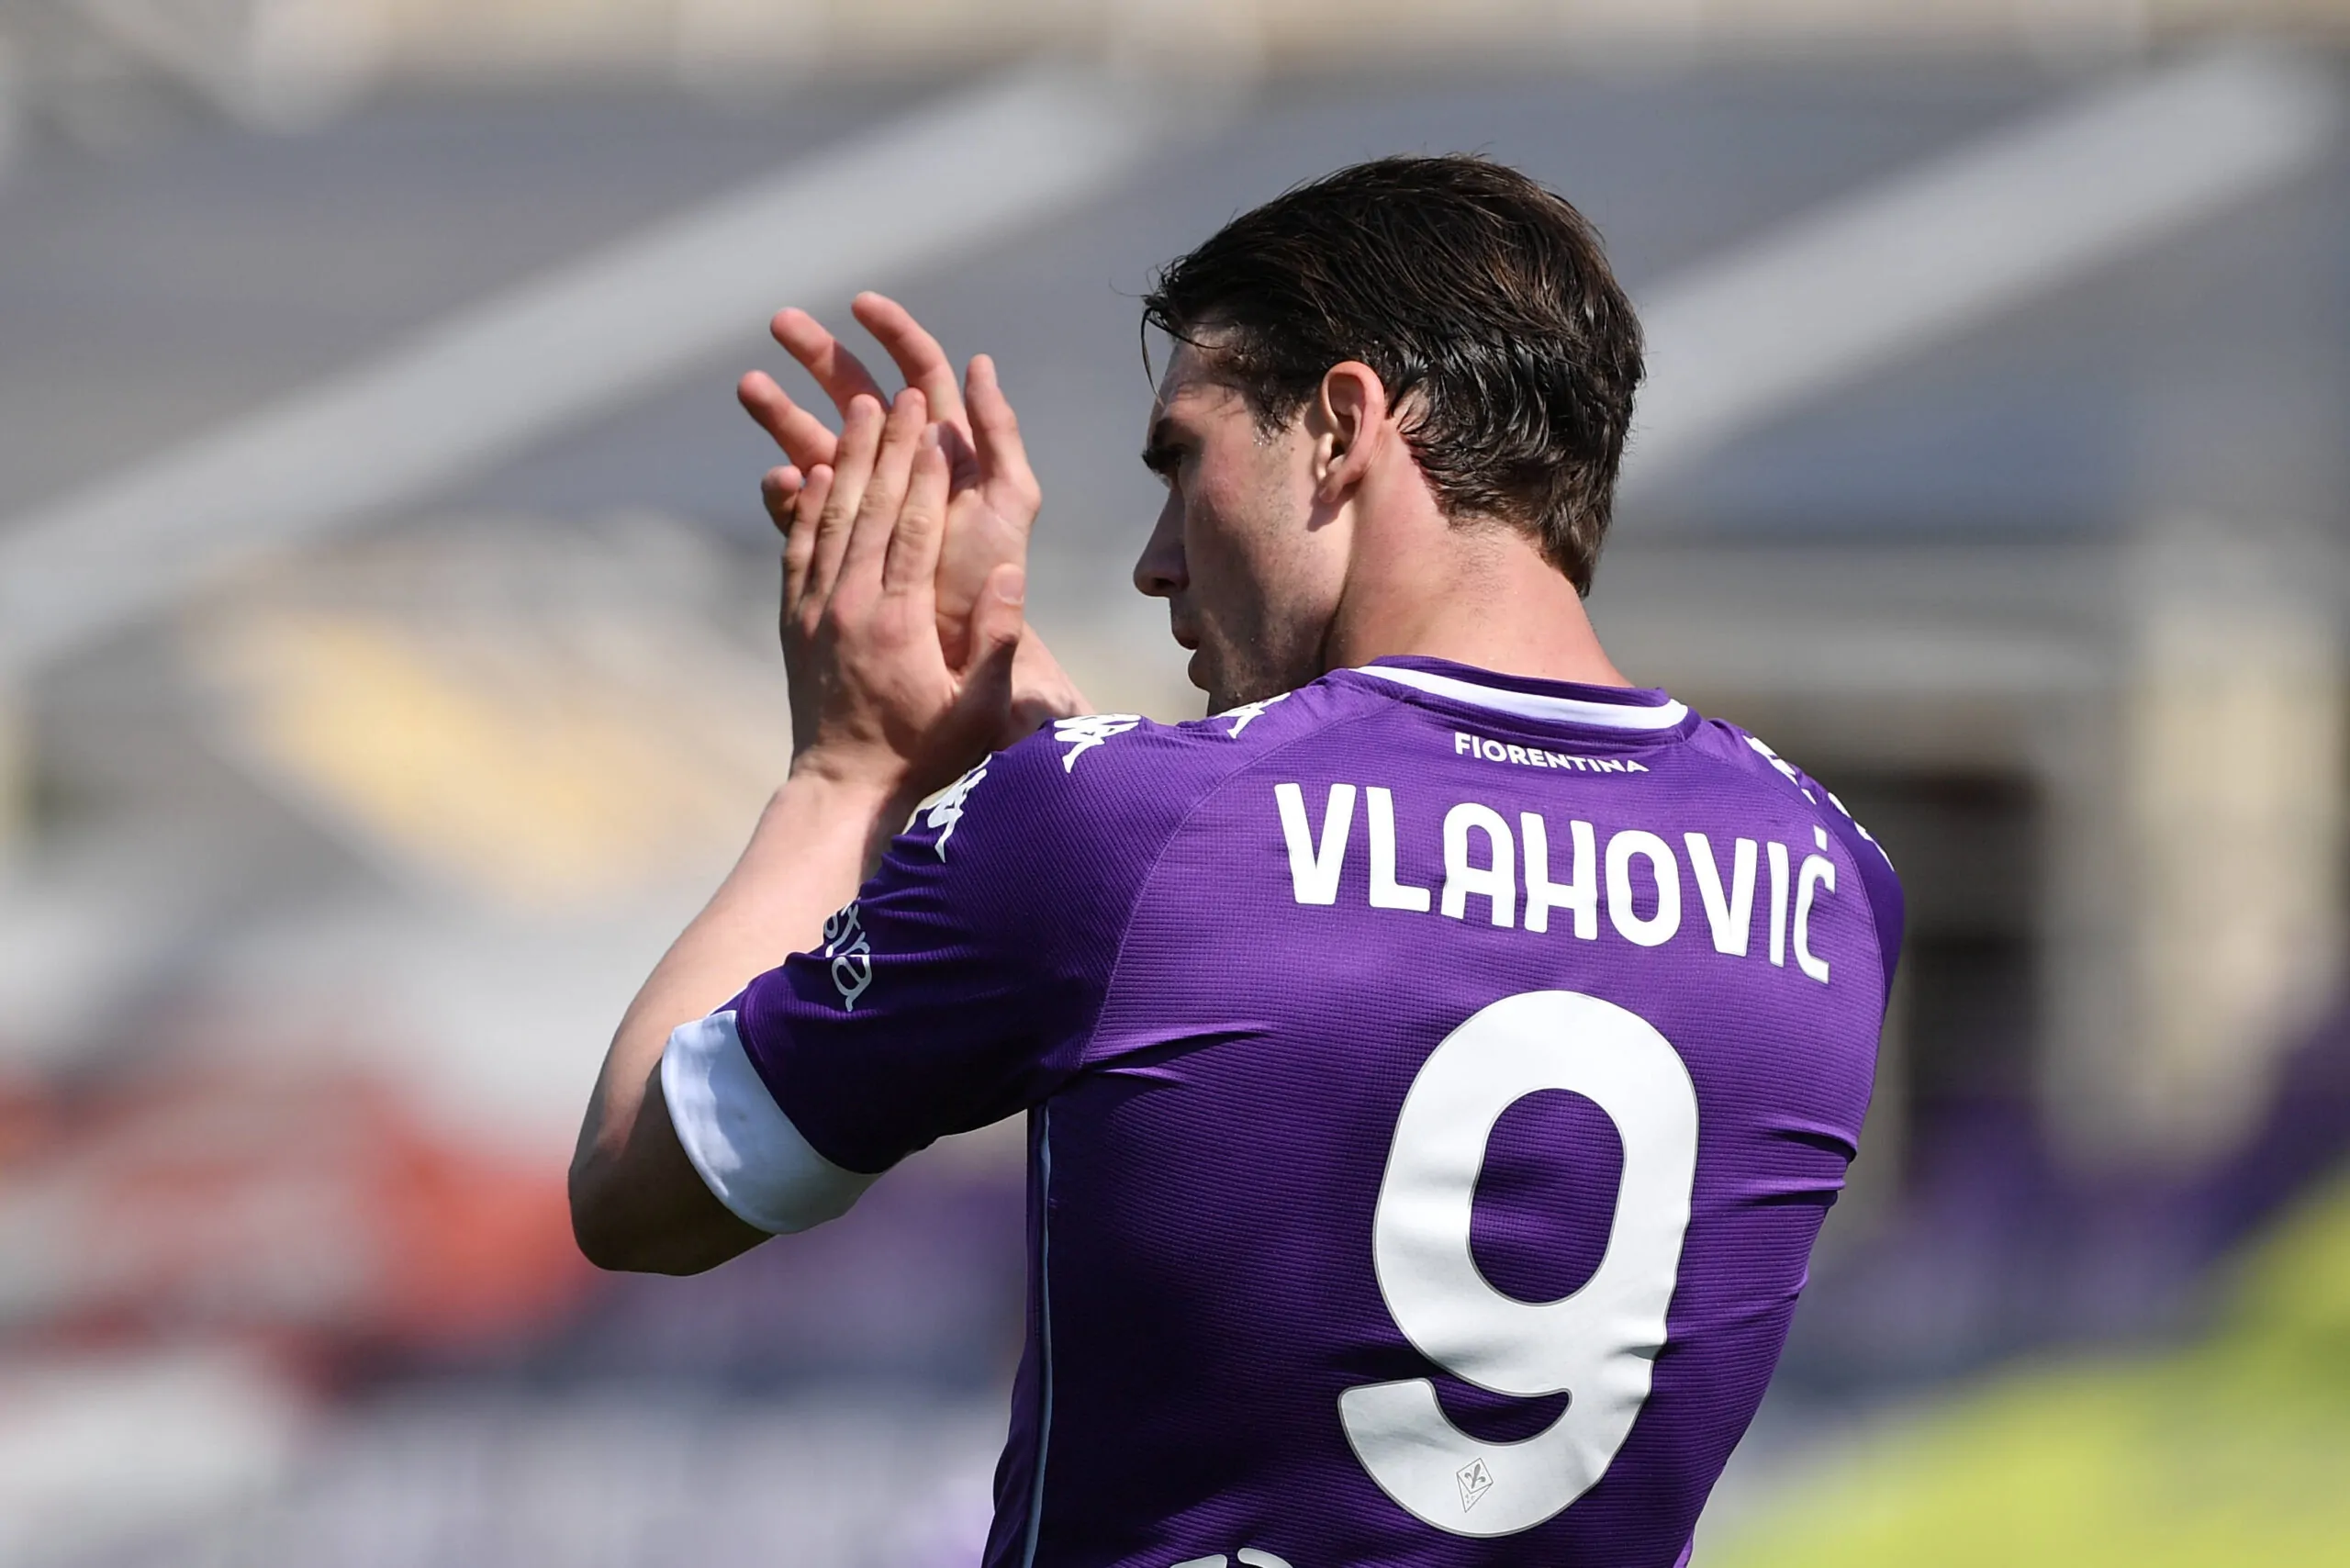 Calciomercato: Juventus disposta a sacrificare il giocatore per arrivare a Vlahovic